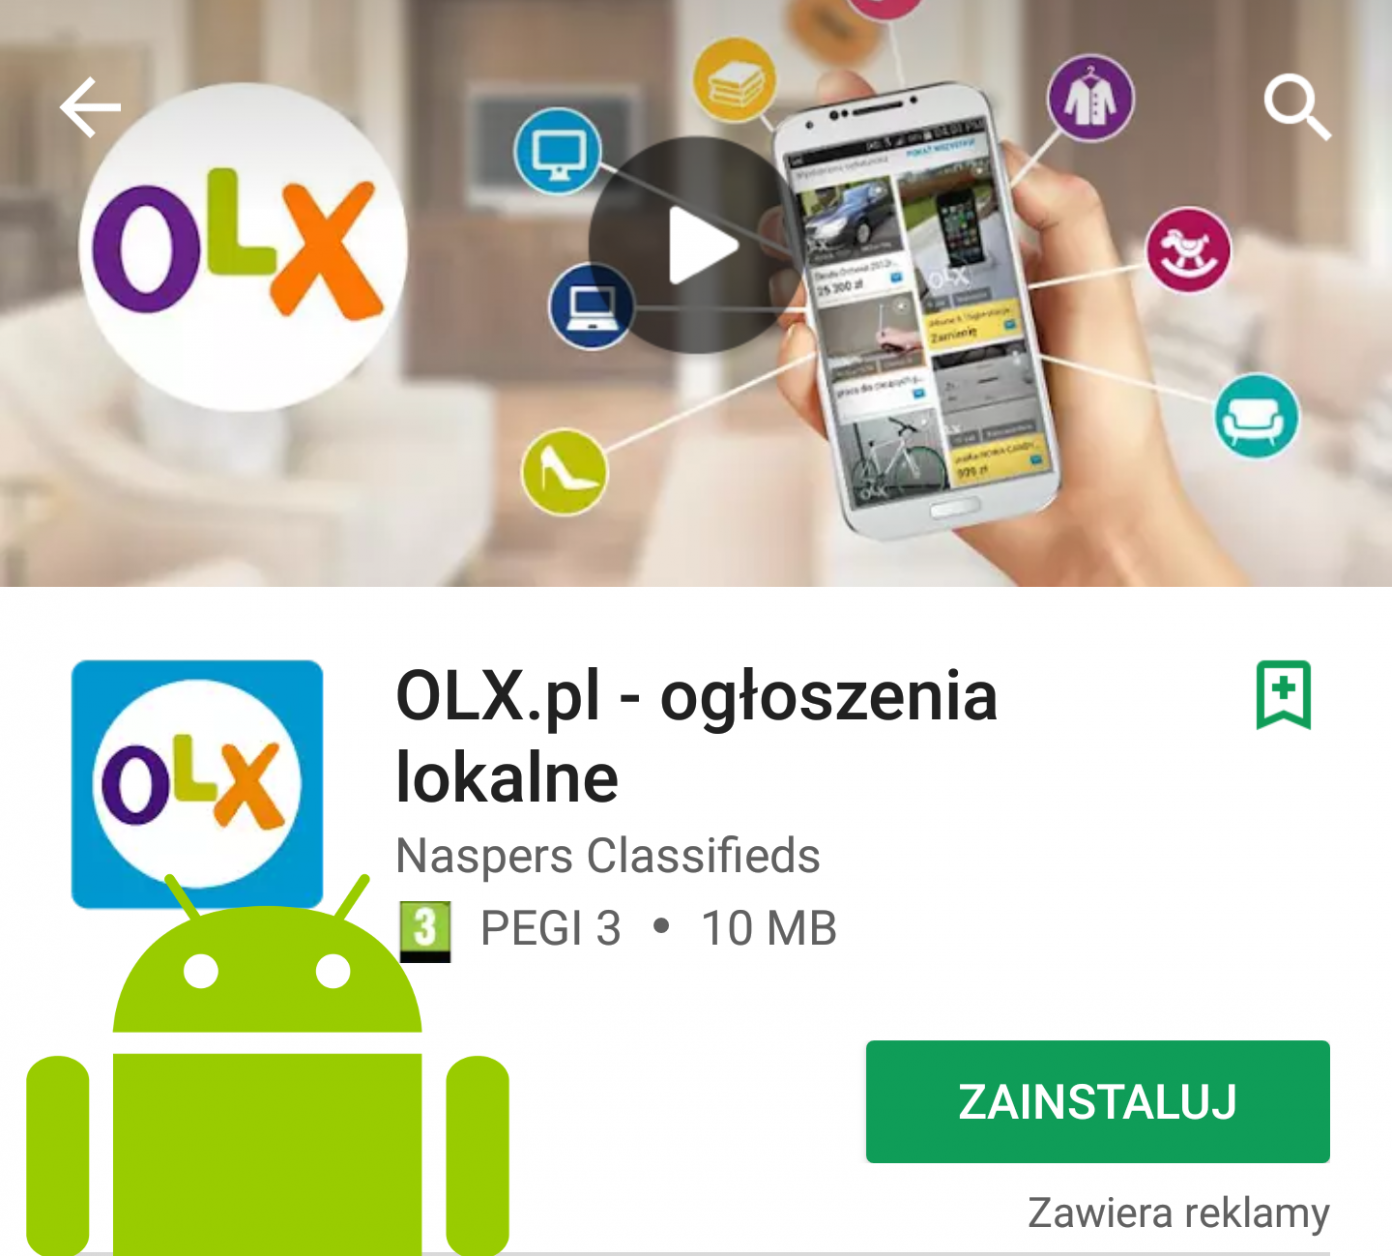 Jak łatwo zainstalować aplikację OLX na android? jak Łatwo?